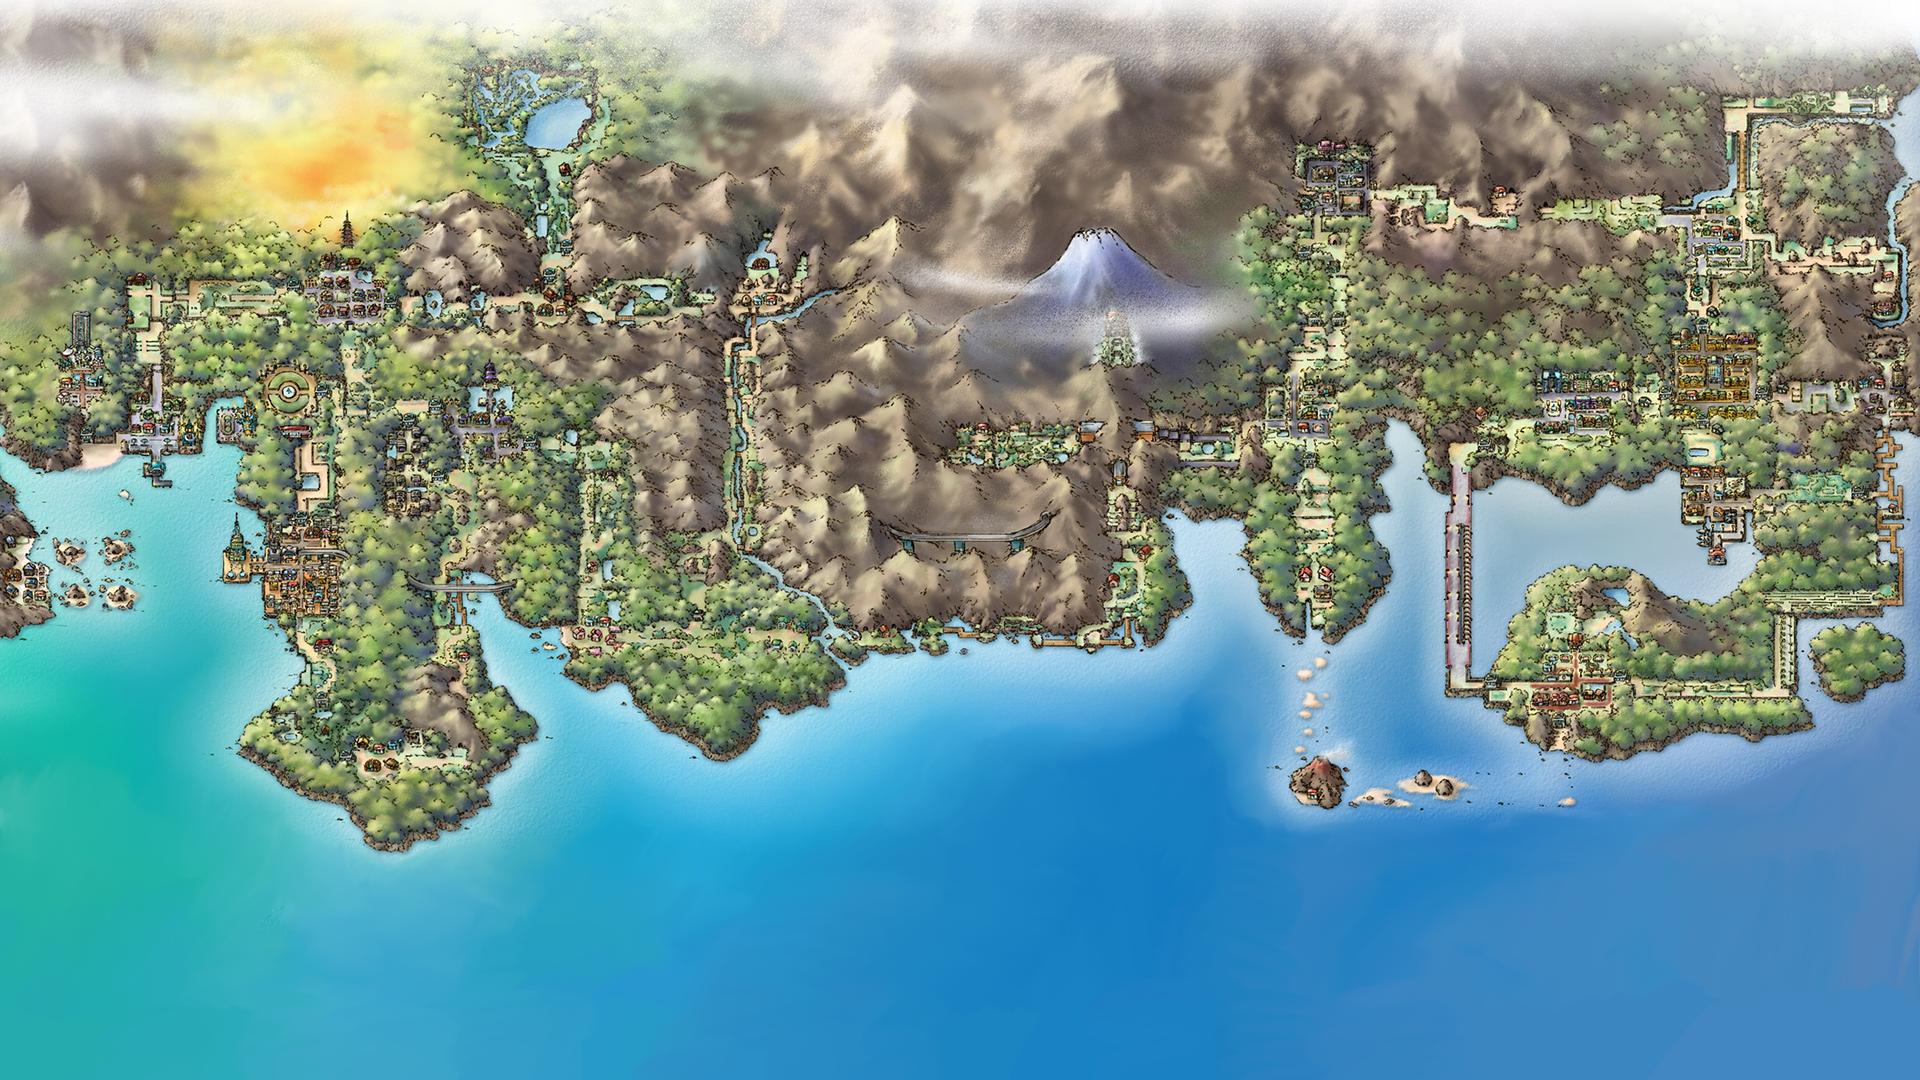 Pokemon Map Wallpaper Free Pokemon Map Background